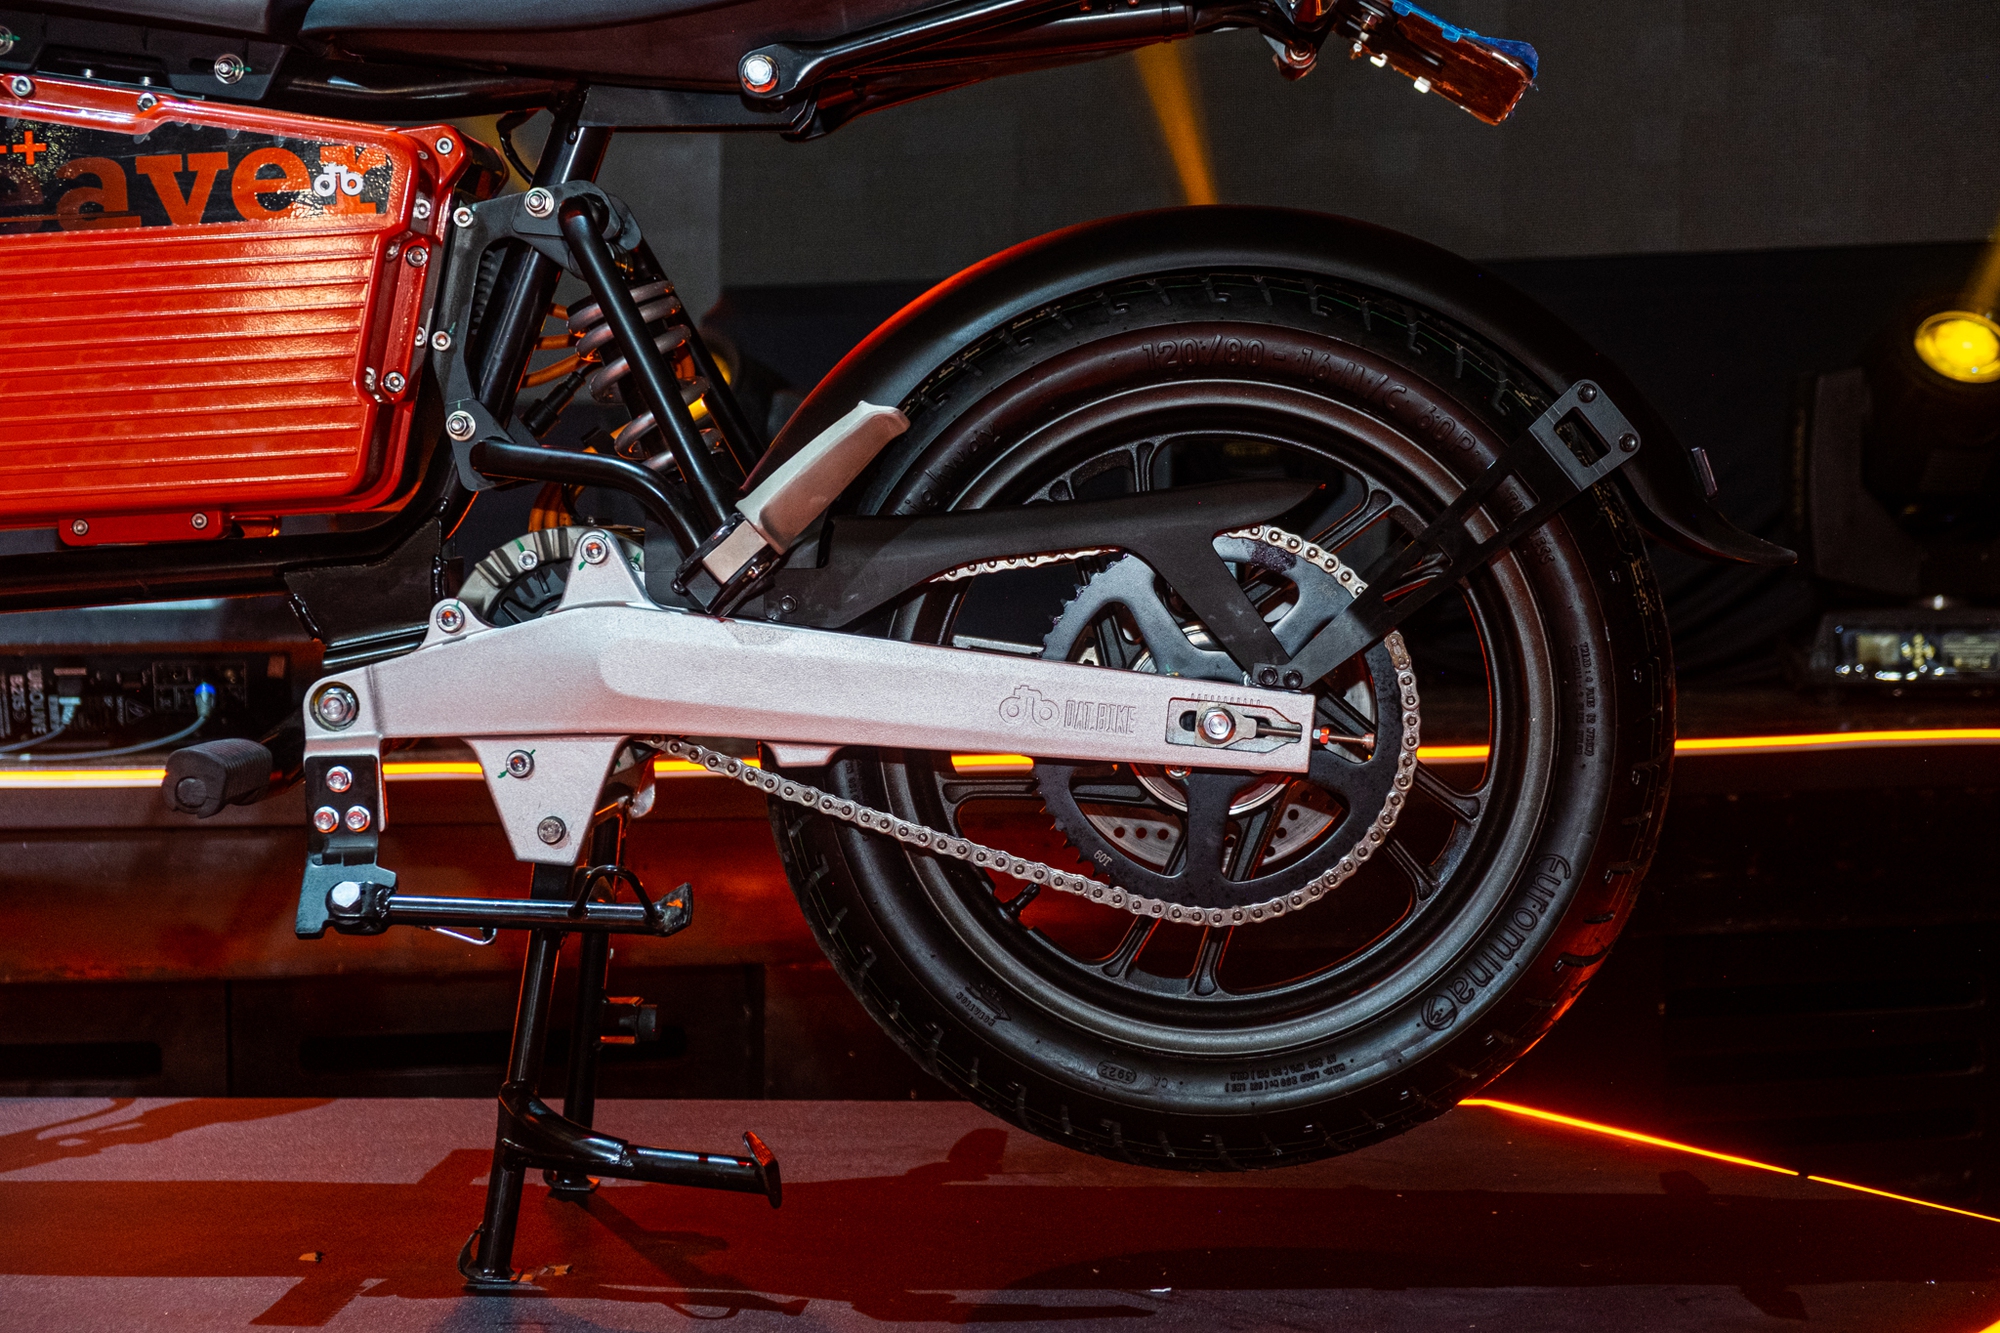 Ra mắt Dat Bike Weaver++: Giá 65,9 triệu đồng, dáng cổ điển, sạc nhanh chưa từng có tại Việt Nam - ảnh 7